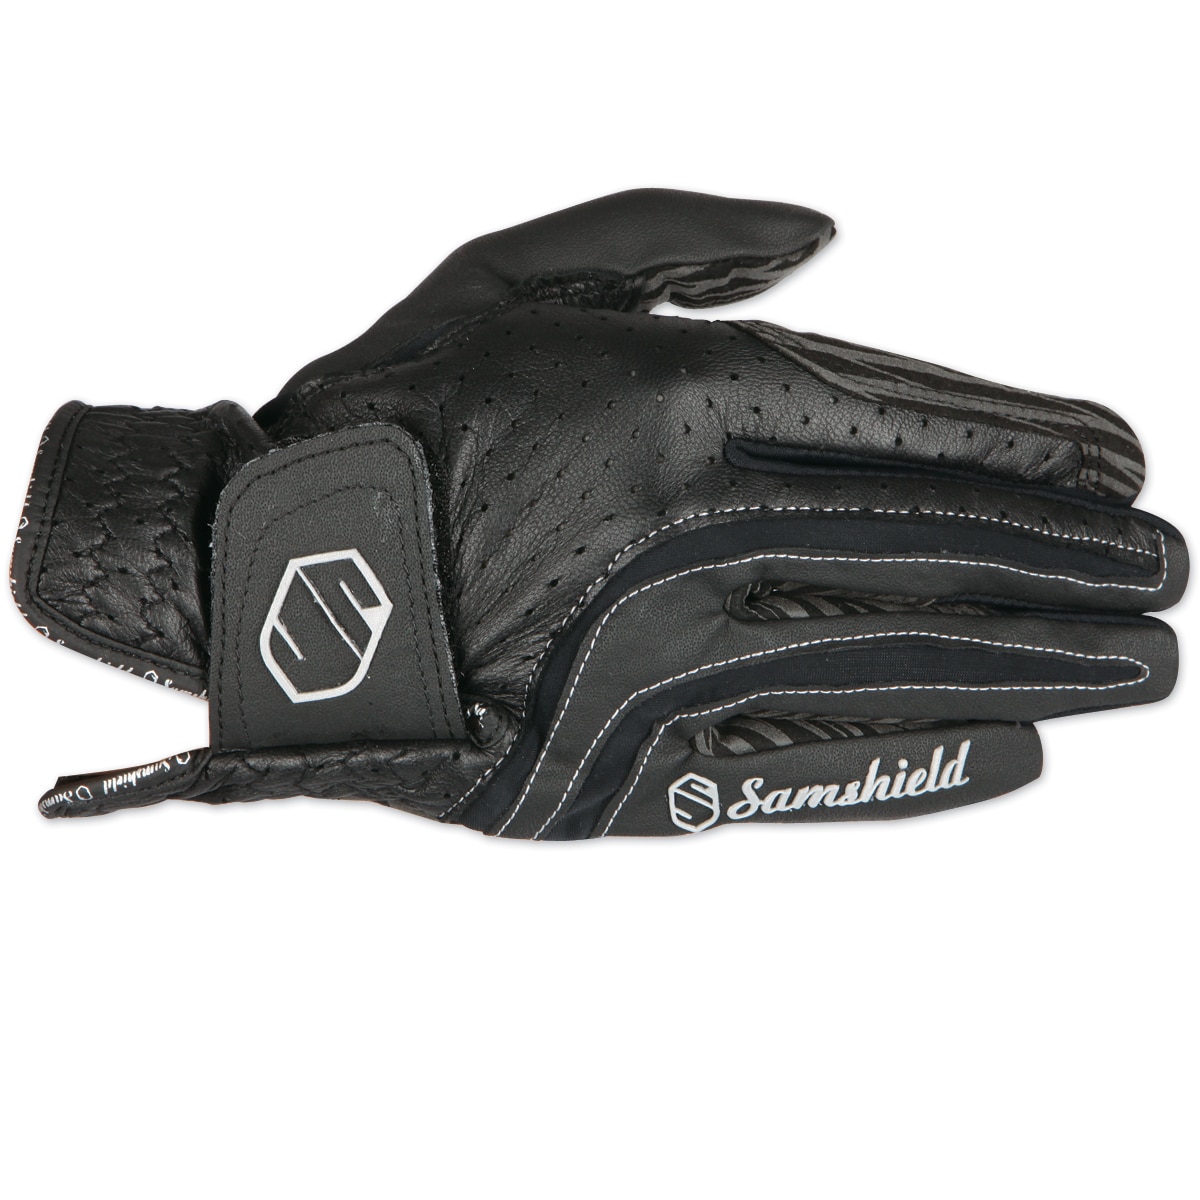 Reithandschuhe Gloves Samshield V-Skin black blue 6-10 